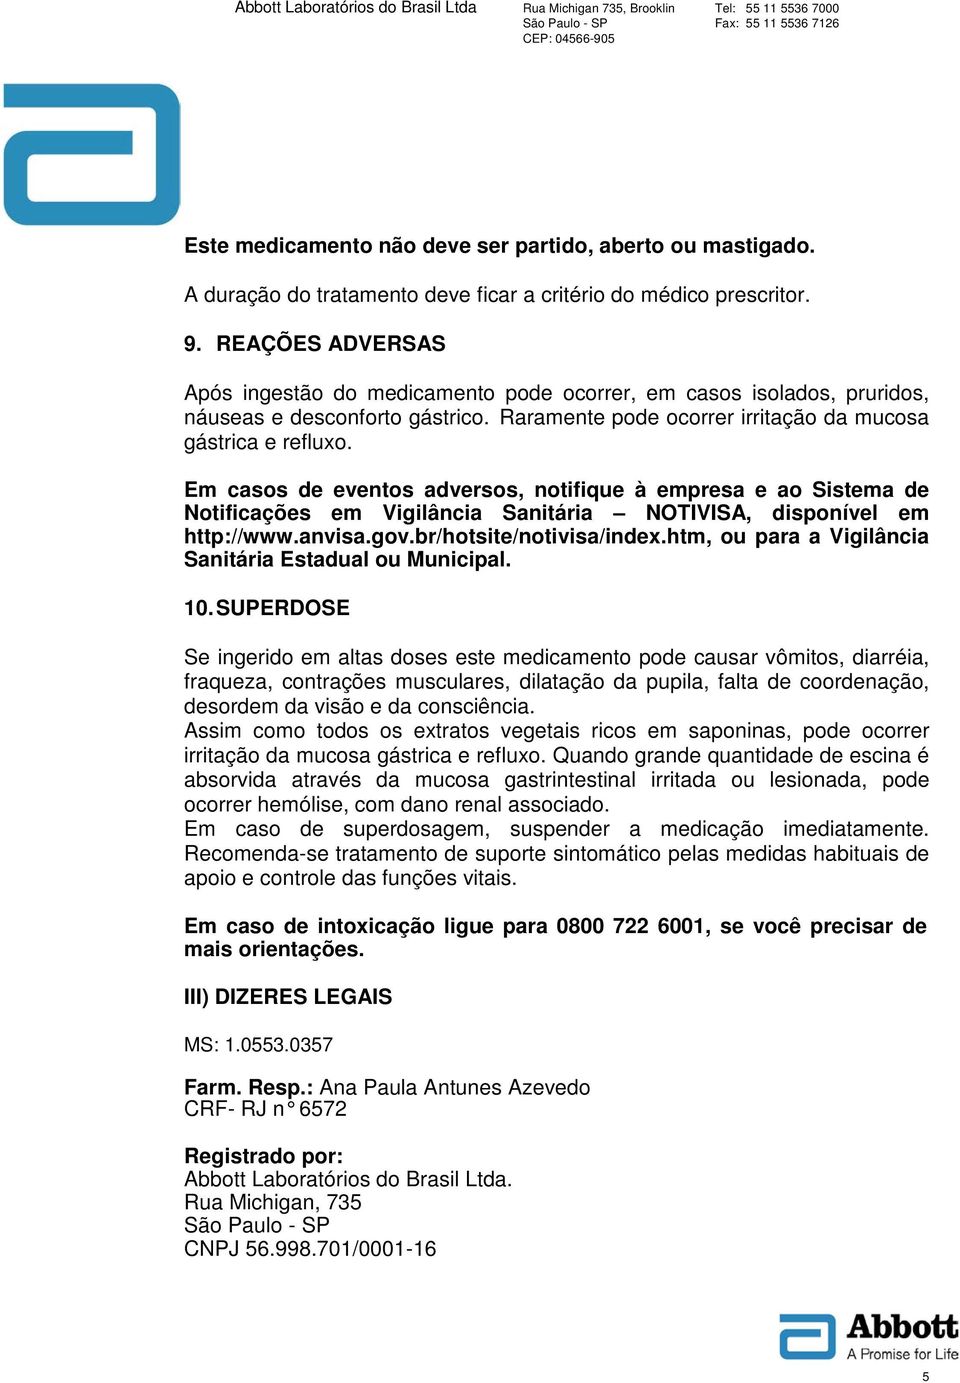 Em casos de eventos adversos, notifique à empresa e ao Sistema de Notificações em Vigilância Sanitária NOTIVISA, disponível em http://www.anvisa.gov.br/hotsite/notivisa/index.